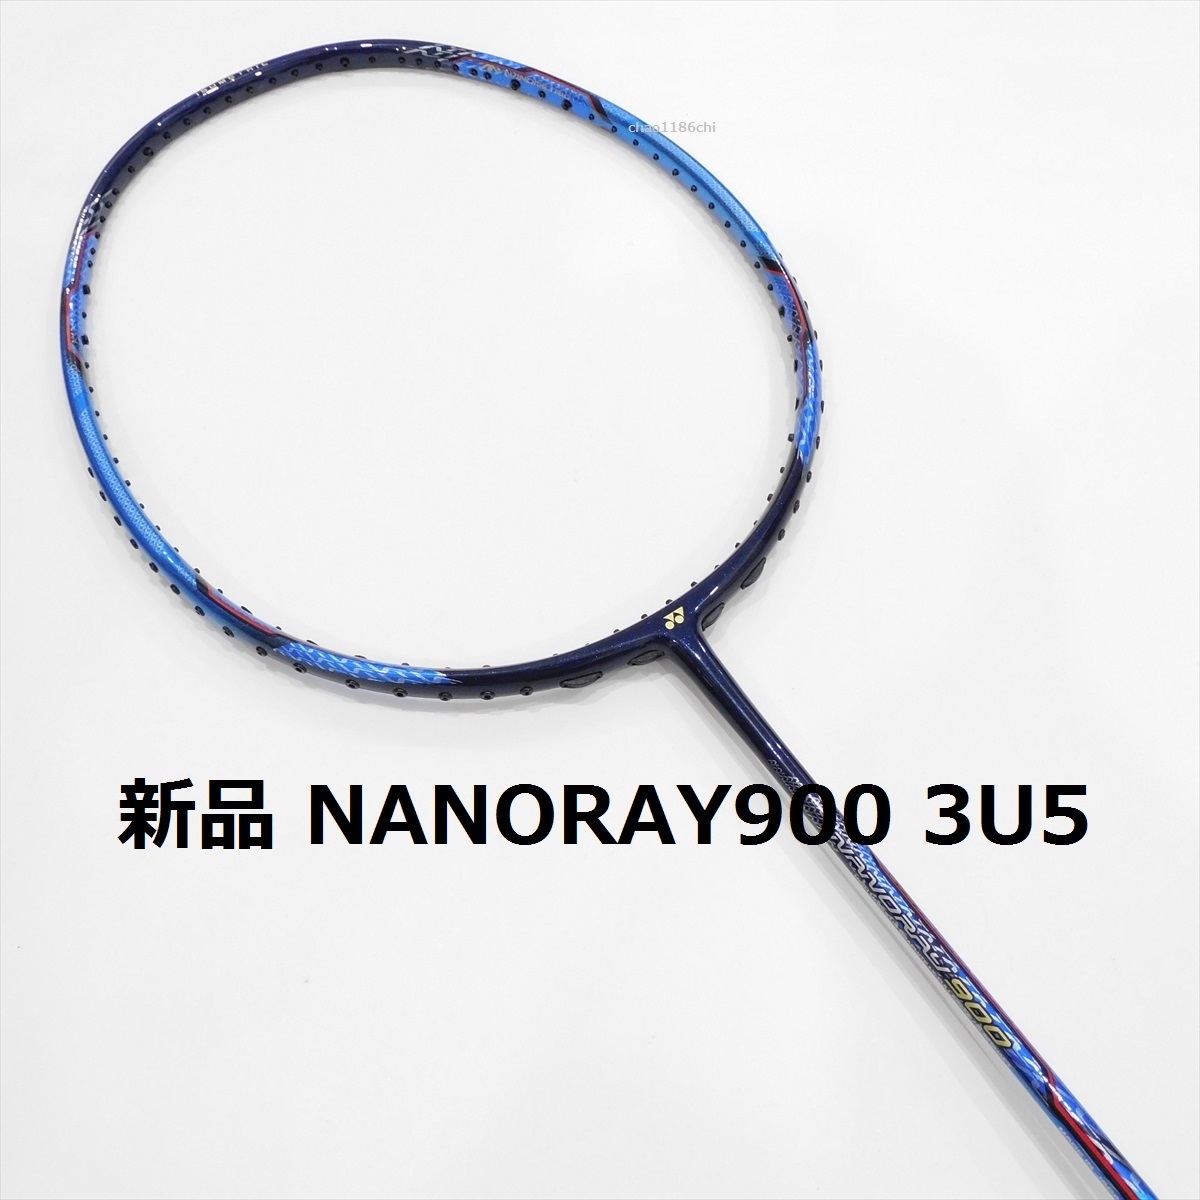 送料込/新品/ヨネックス/3U5/ナノレイ900/NANORAY900/YONEX/700/ナノレイ800/ナノフレア800/ナノフレア800LT/ナノスピード9900/8000